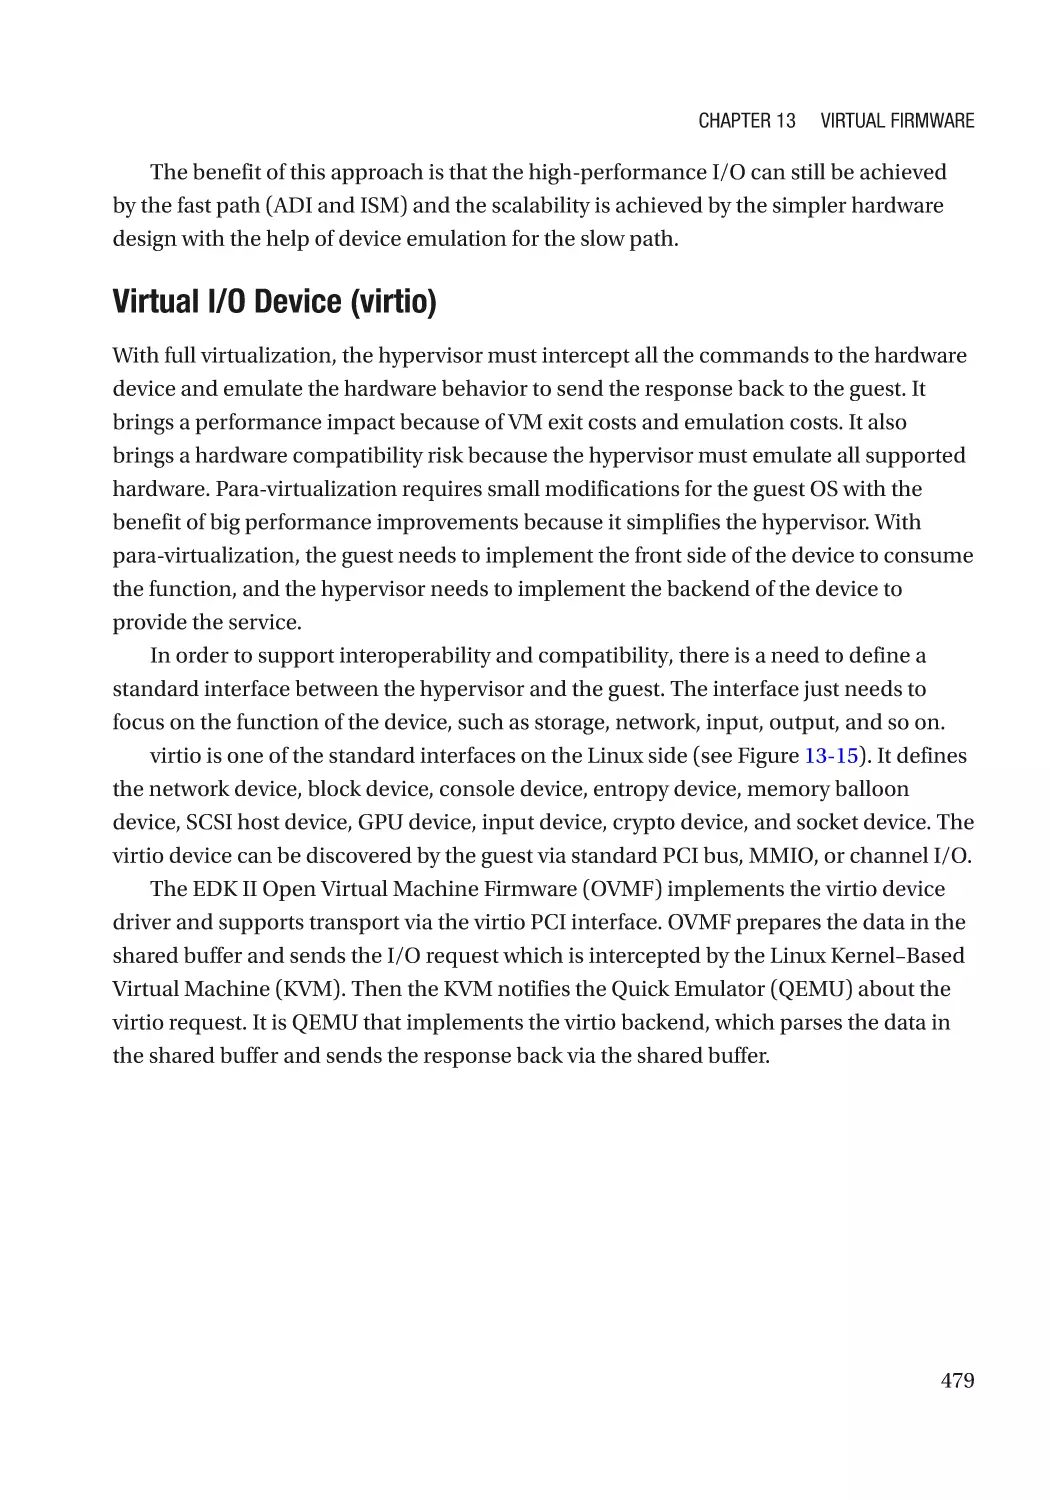 Virtual I/O Device (virtio)